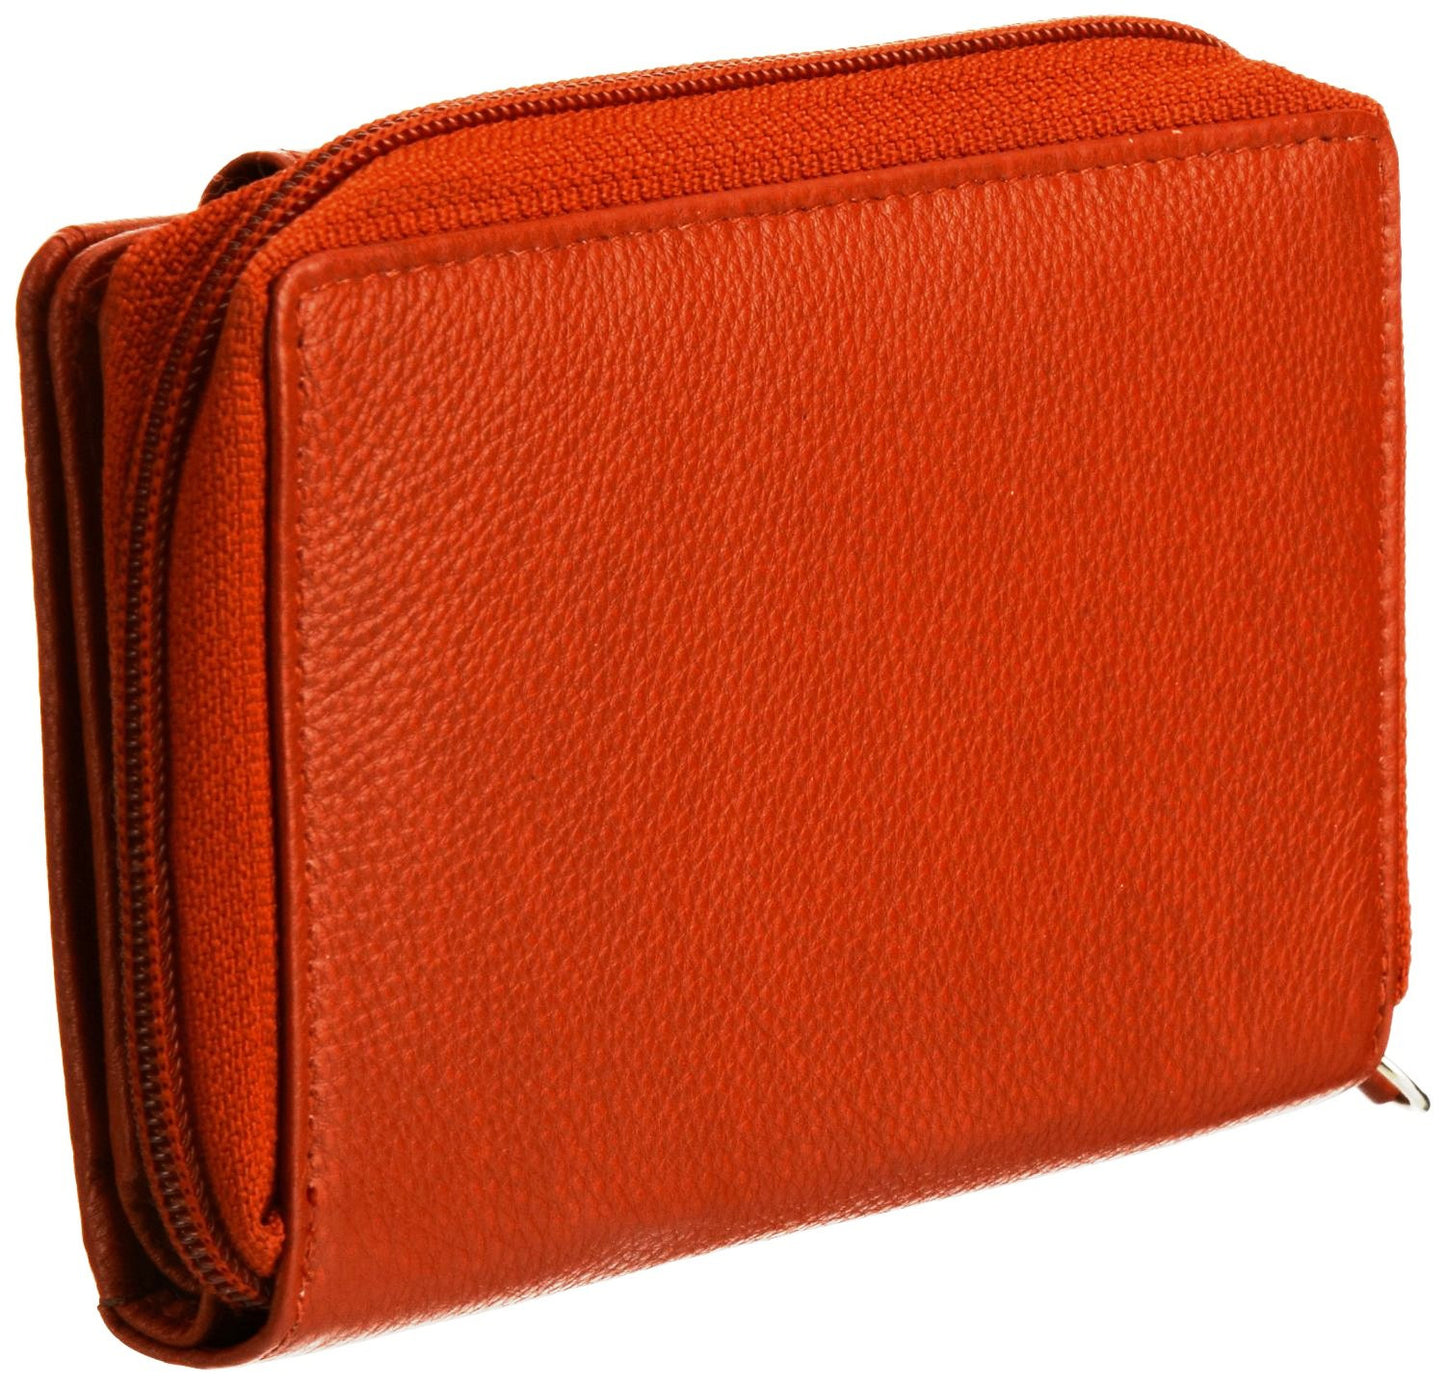 Pratico - women leather flap wallet #LW02 Red